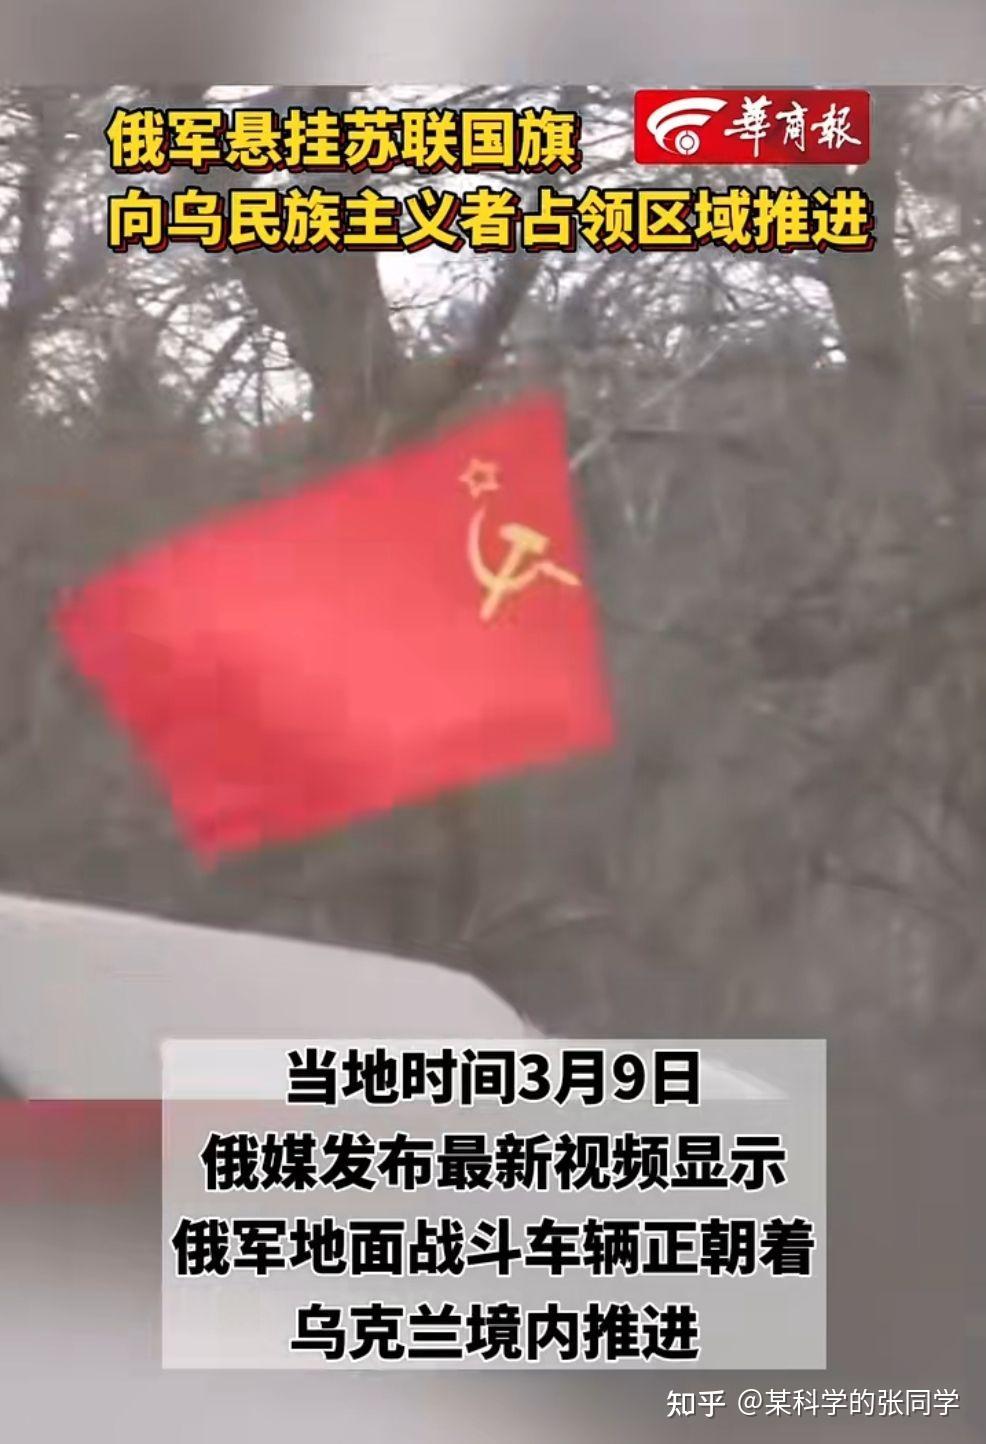 苏修和苏联国旗区别图片